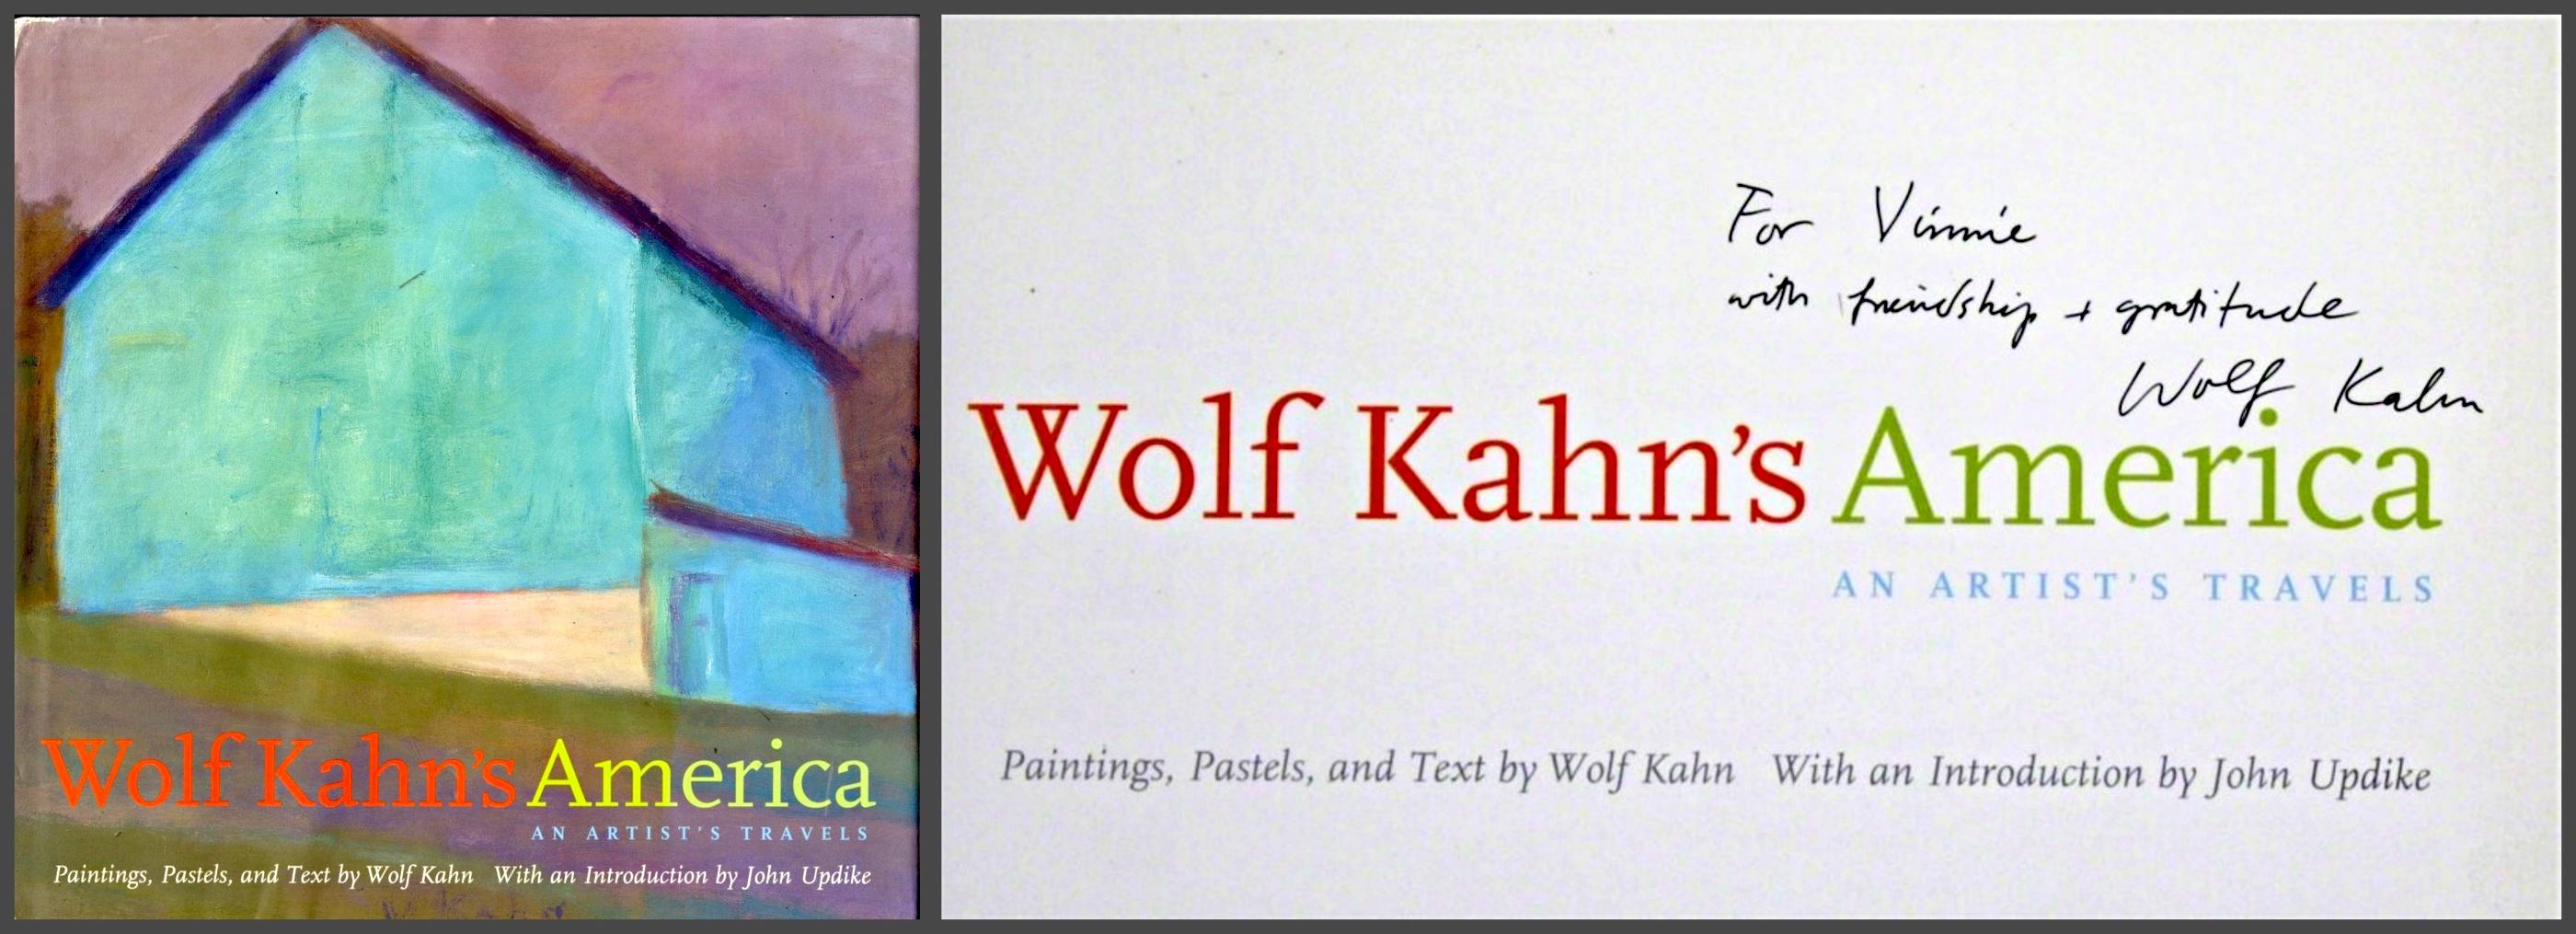 WOLFS Kahn
L'Amérique de Wolf Kahn (signé et inscrit à la main), 2003
Monographie reliée, signée et dédicacée, avec jaquette.
Signé à l'encre avec une dédicace personnelle sur la page de titre à l'intérieur.
10 1/5 × 10 1/5 pouces
Jolie monographie